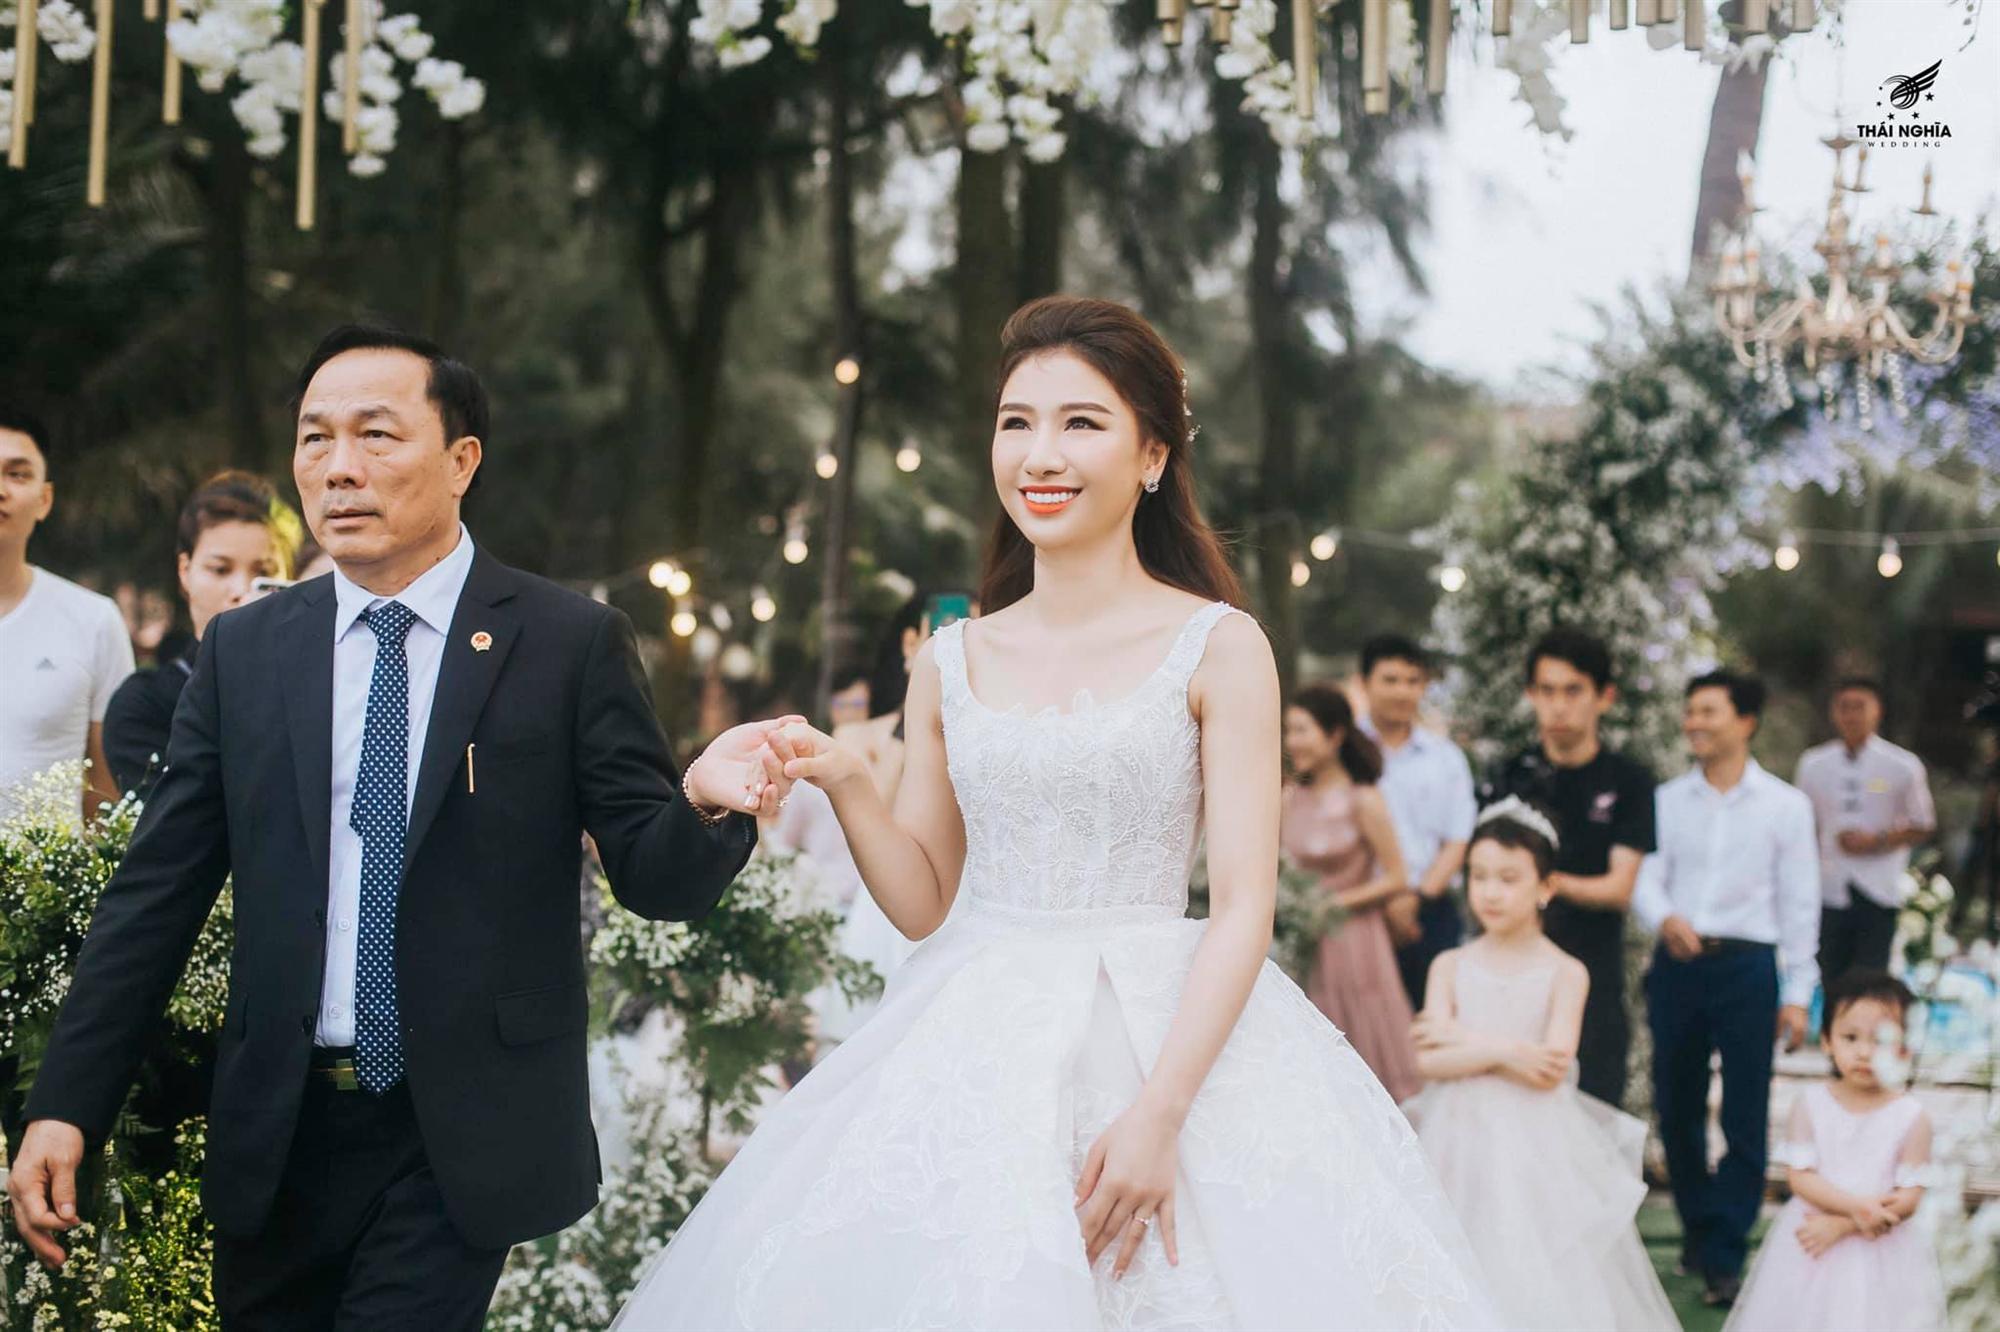 Đám cưới xa hoa của con gái bầu Đệ và người mẫu bên biển Thanh Hóa-2